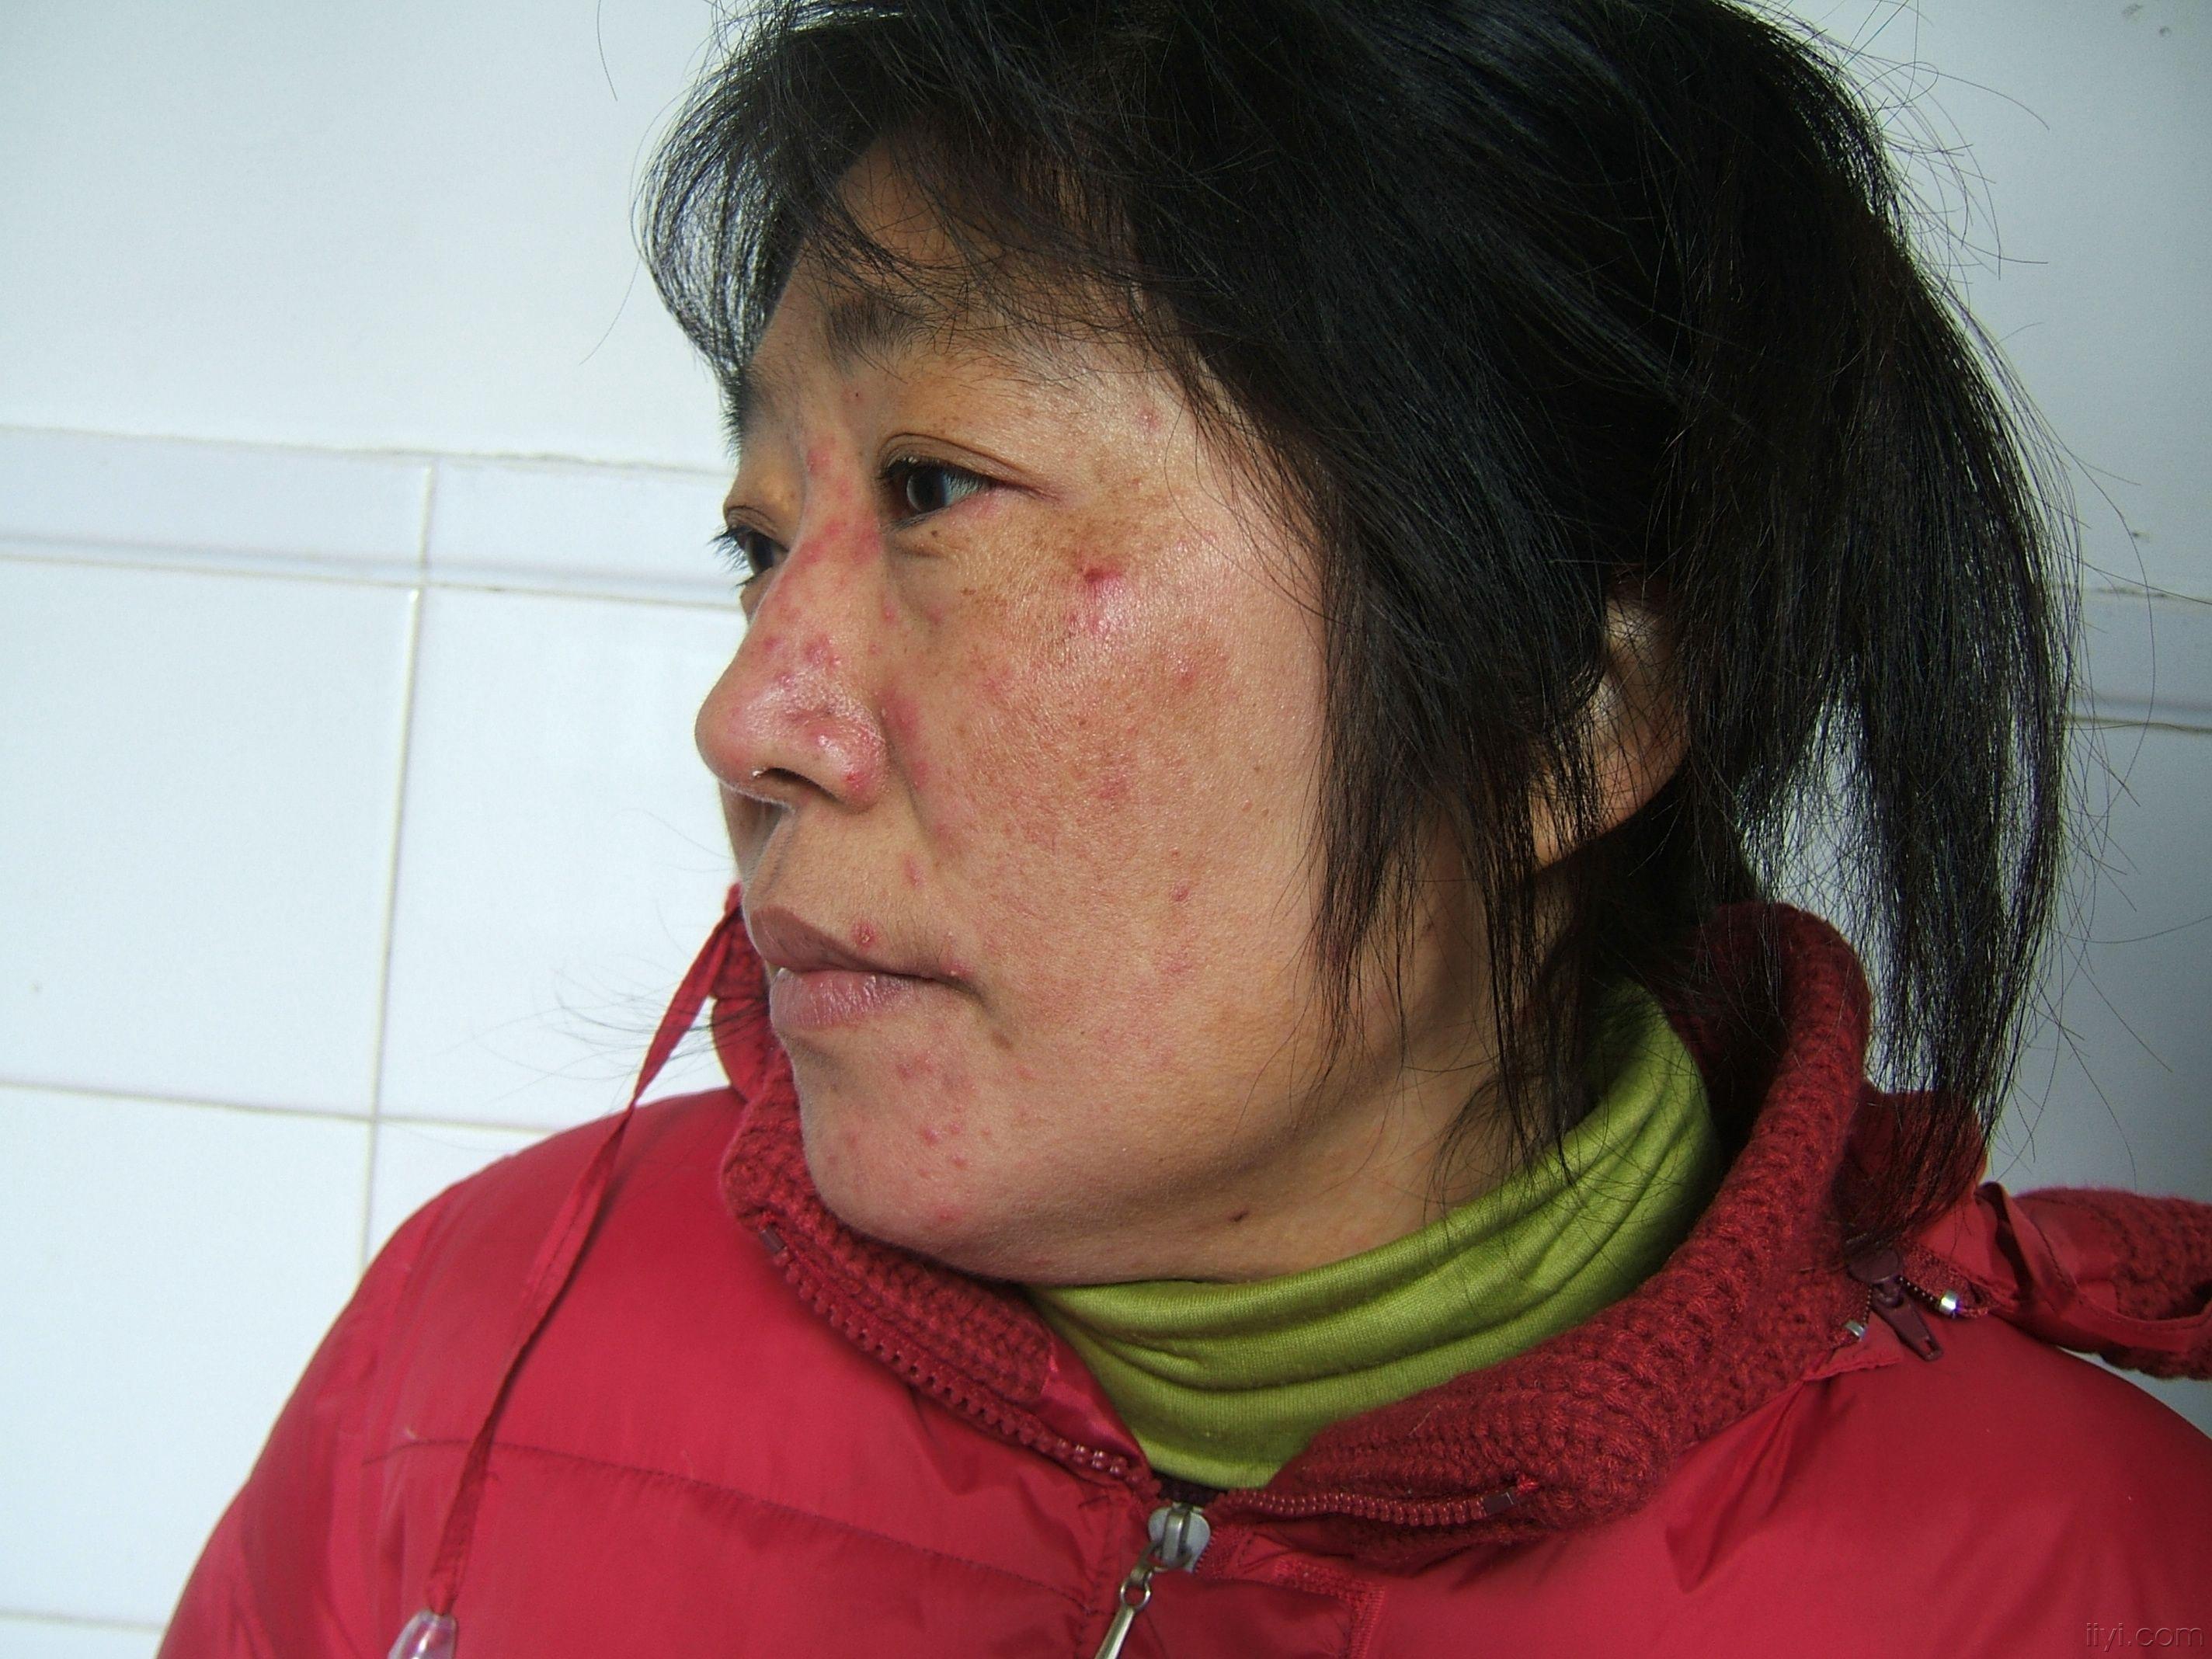 面部红丘疹15年长期使用各种激素药膏